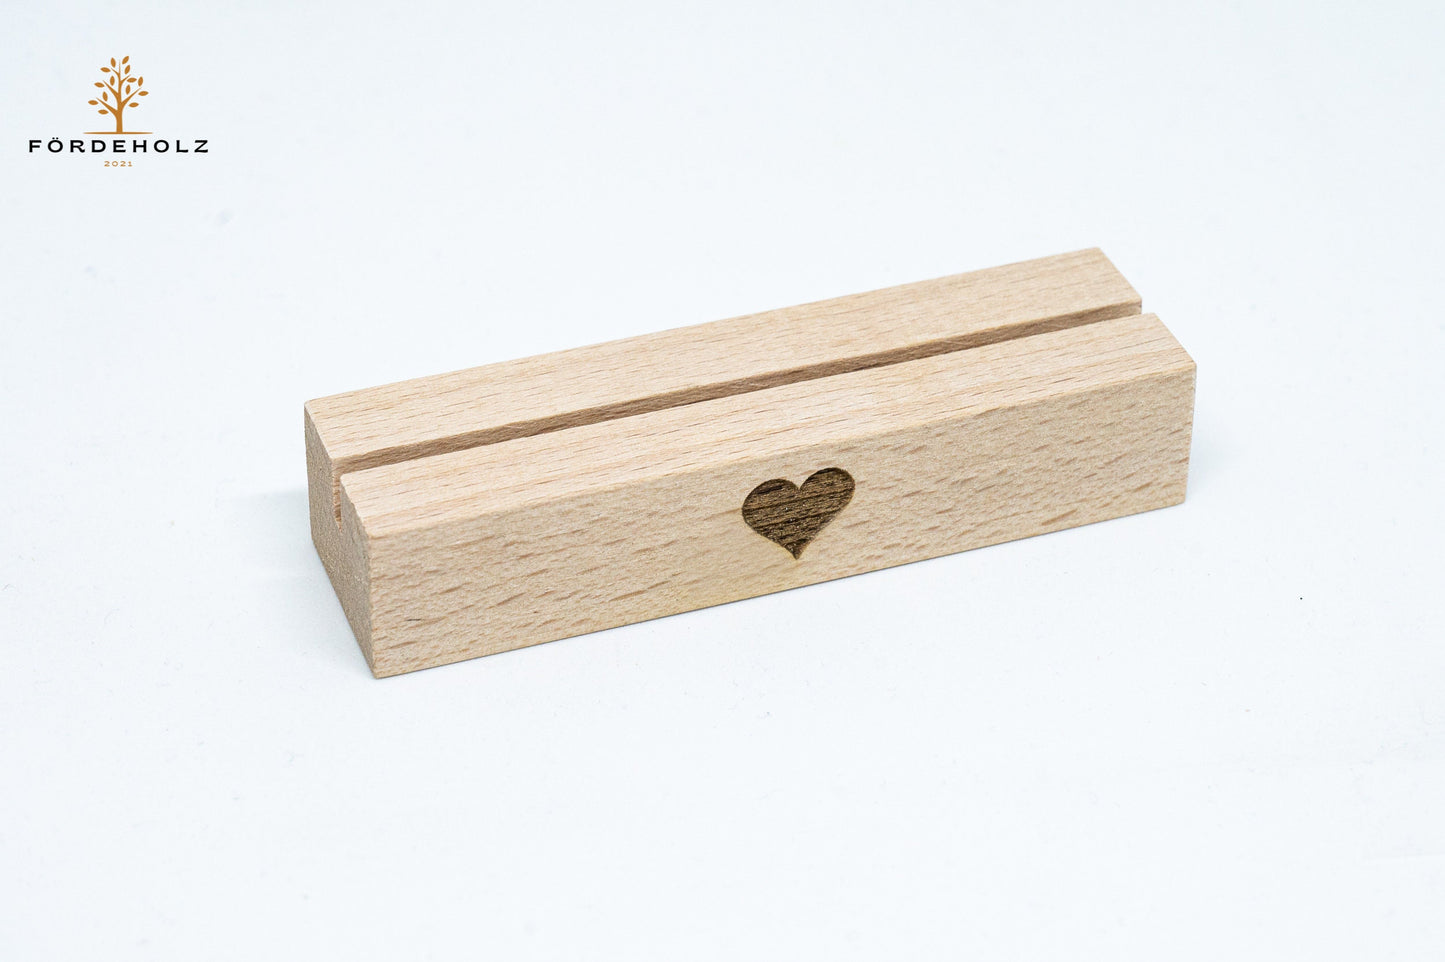 Foto- und Kartenhalter aus Holz, Holzkartenhalter, Kartenaufsteller, Buchenholz "Herz" Geschenk Valentinstag